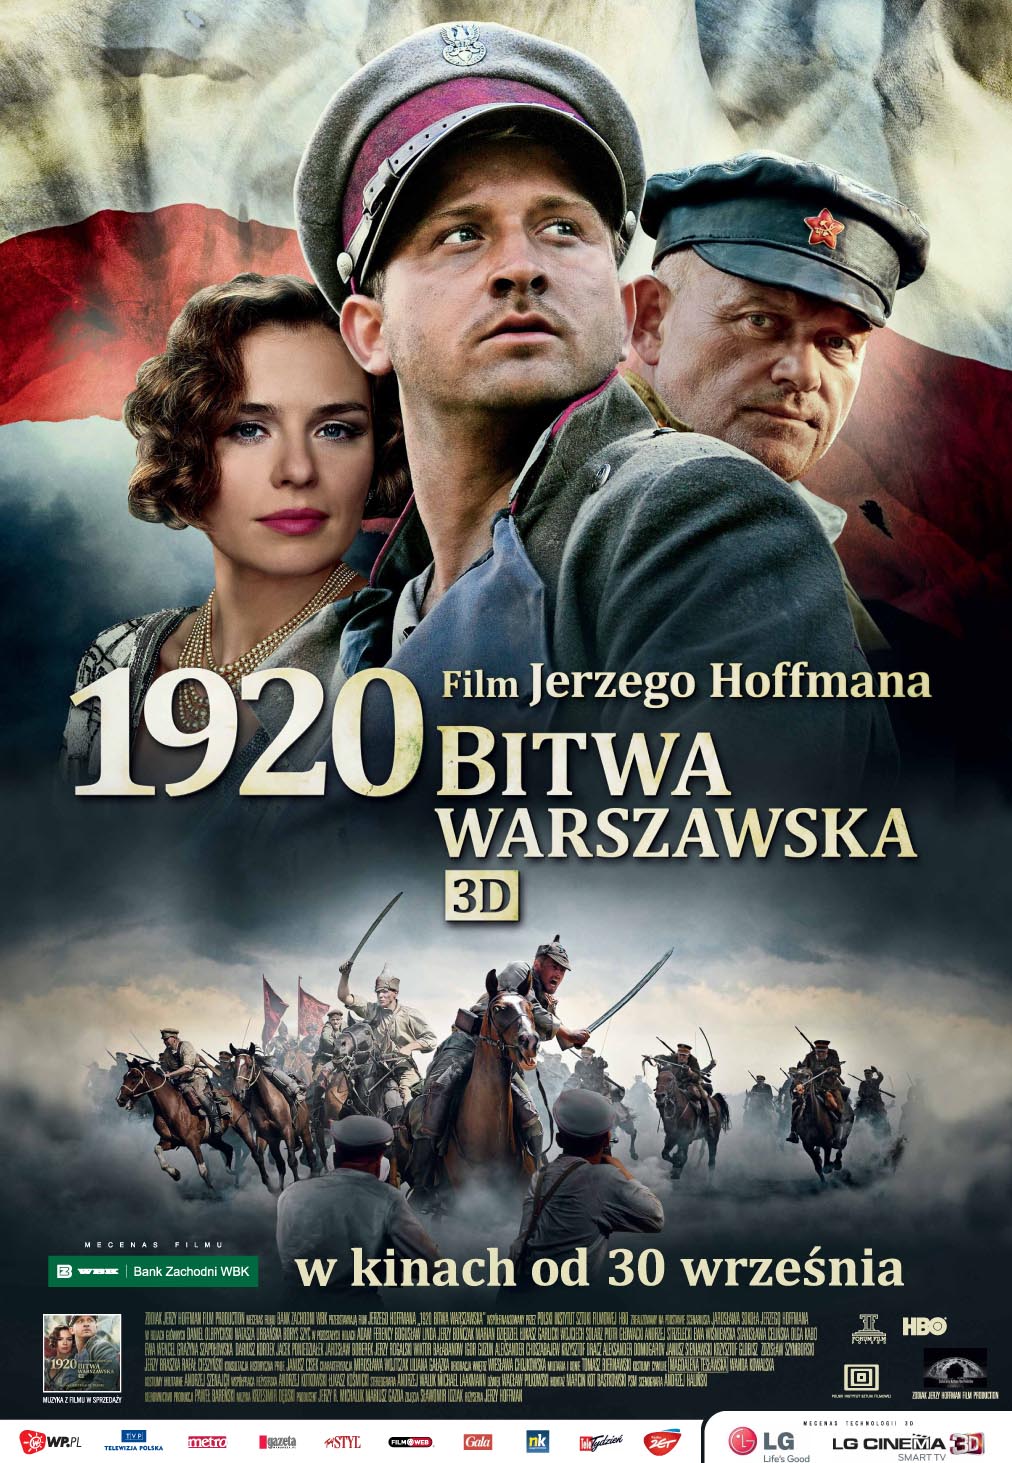 华沙之战1920.Battle.of.Warsaw.1920.2011.POL.BD3D.1080p.BluRay.REMUX.AVC.DTS-HD.MA.5.1-Asmo 31.98GB ...